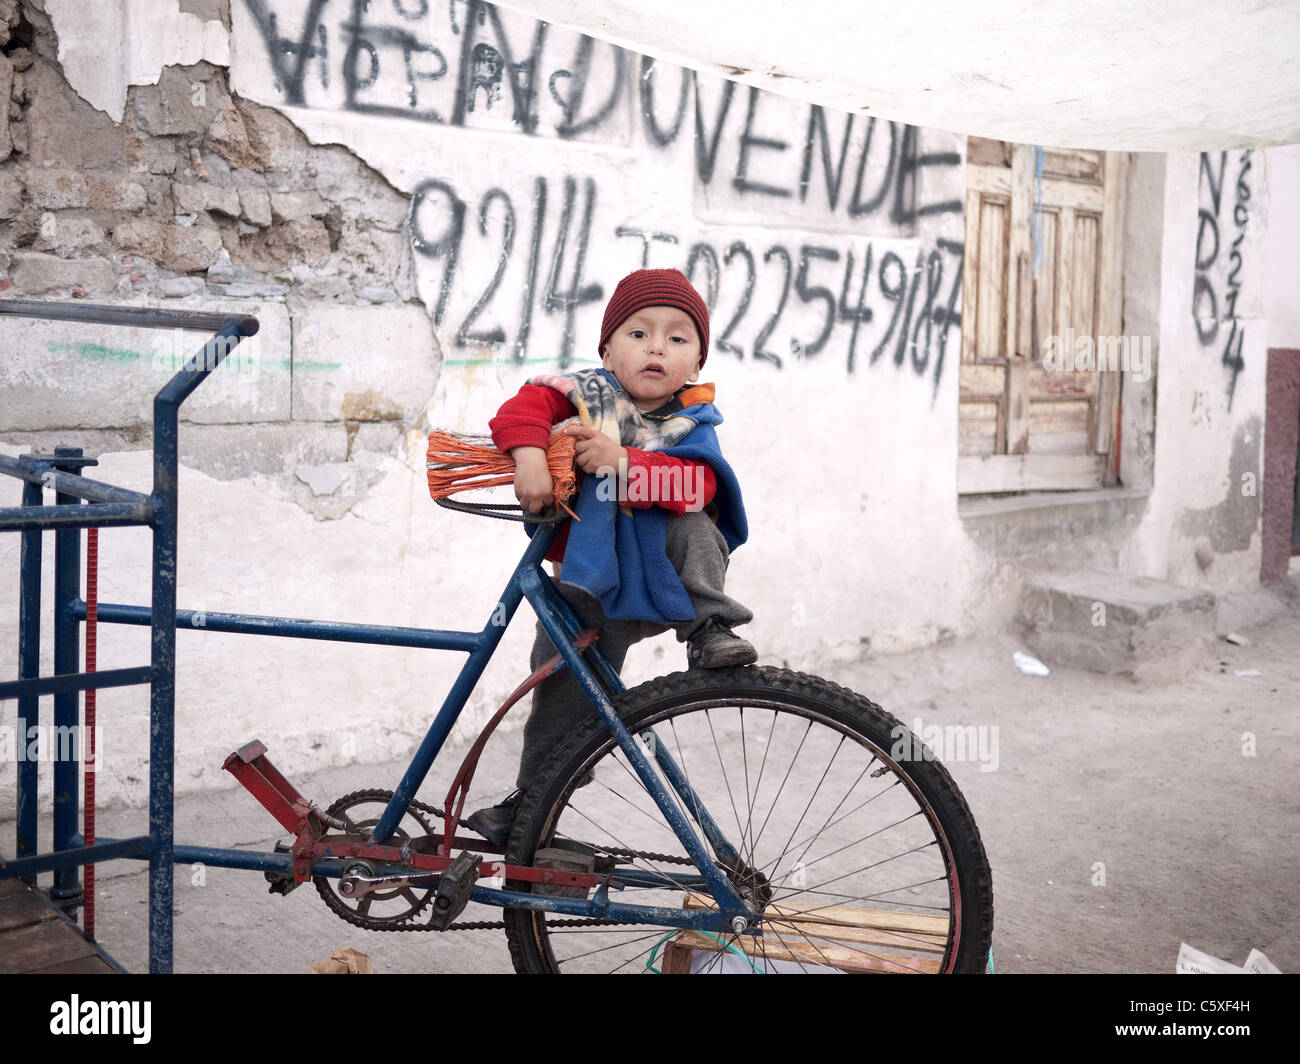 Ein kleiner Junge klettert auf einem Fahrrad in Südamerika. Stockfoto